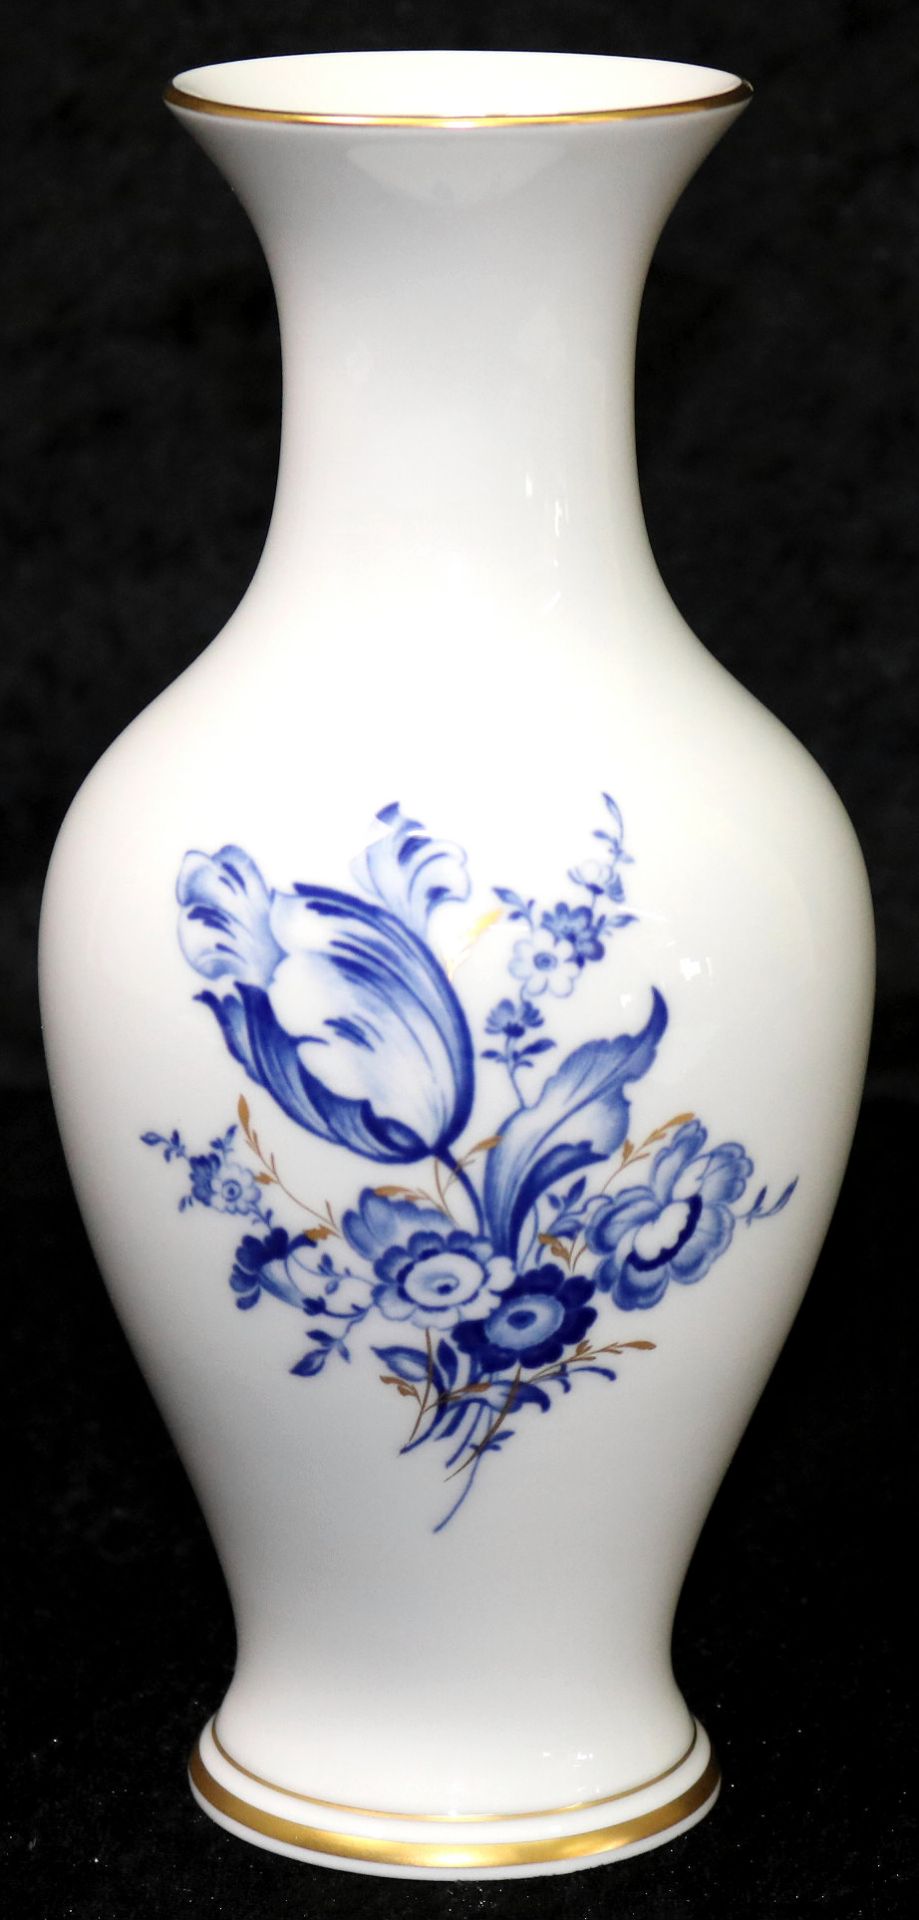 Meissen Porzellan, Vase blaues Blumendekor, 2. Wahl, gekreuzte Schwerter, 20. Jh.